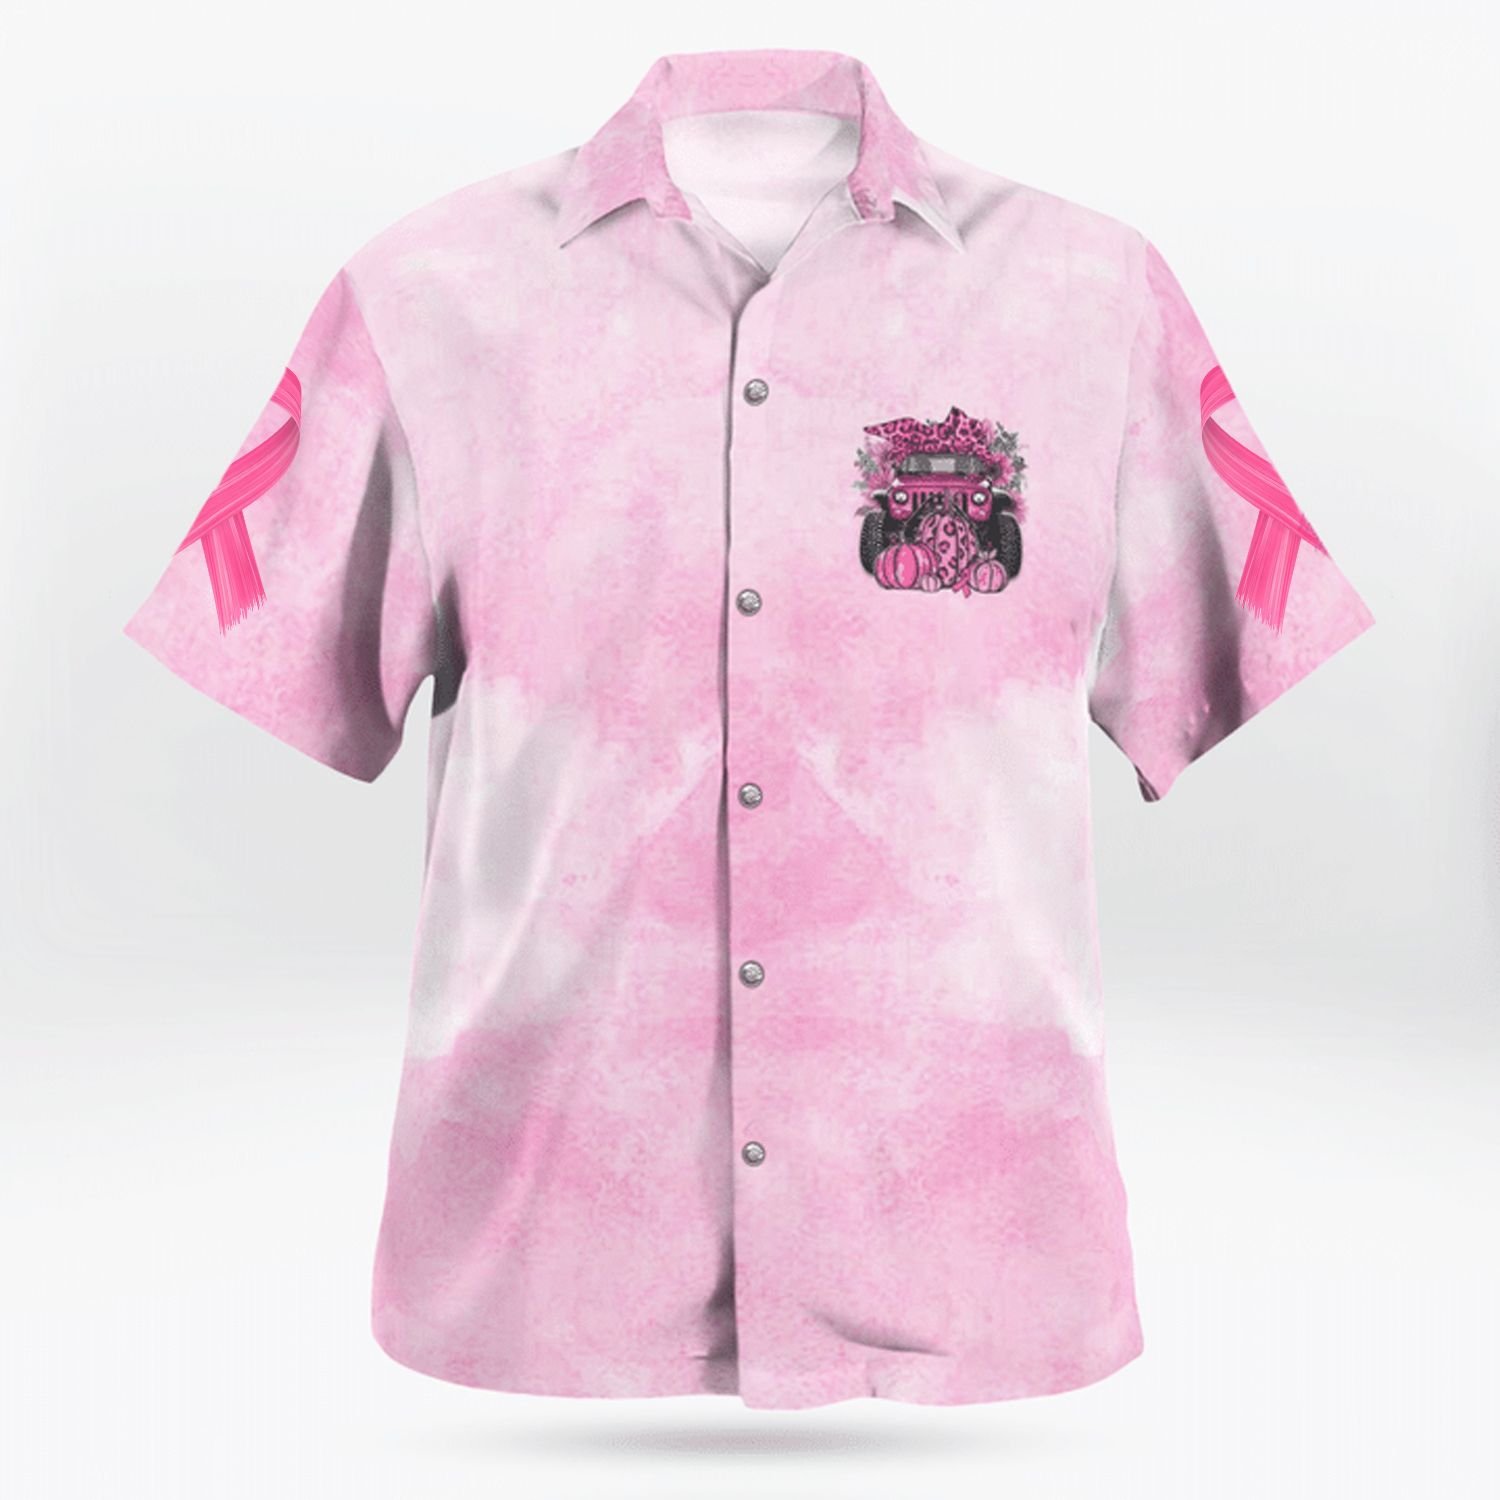 In October we were pink Hawaiian shirt 2